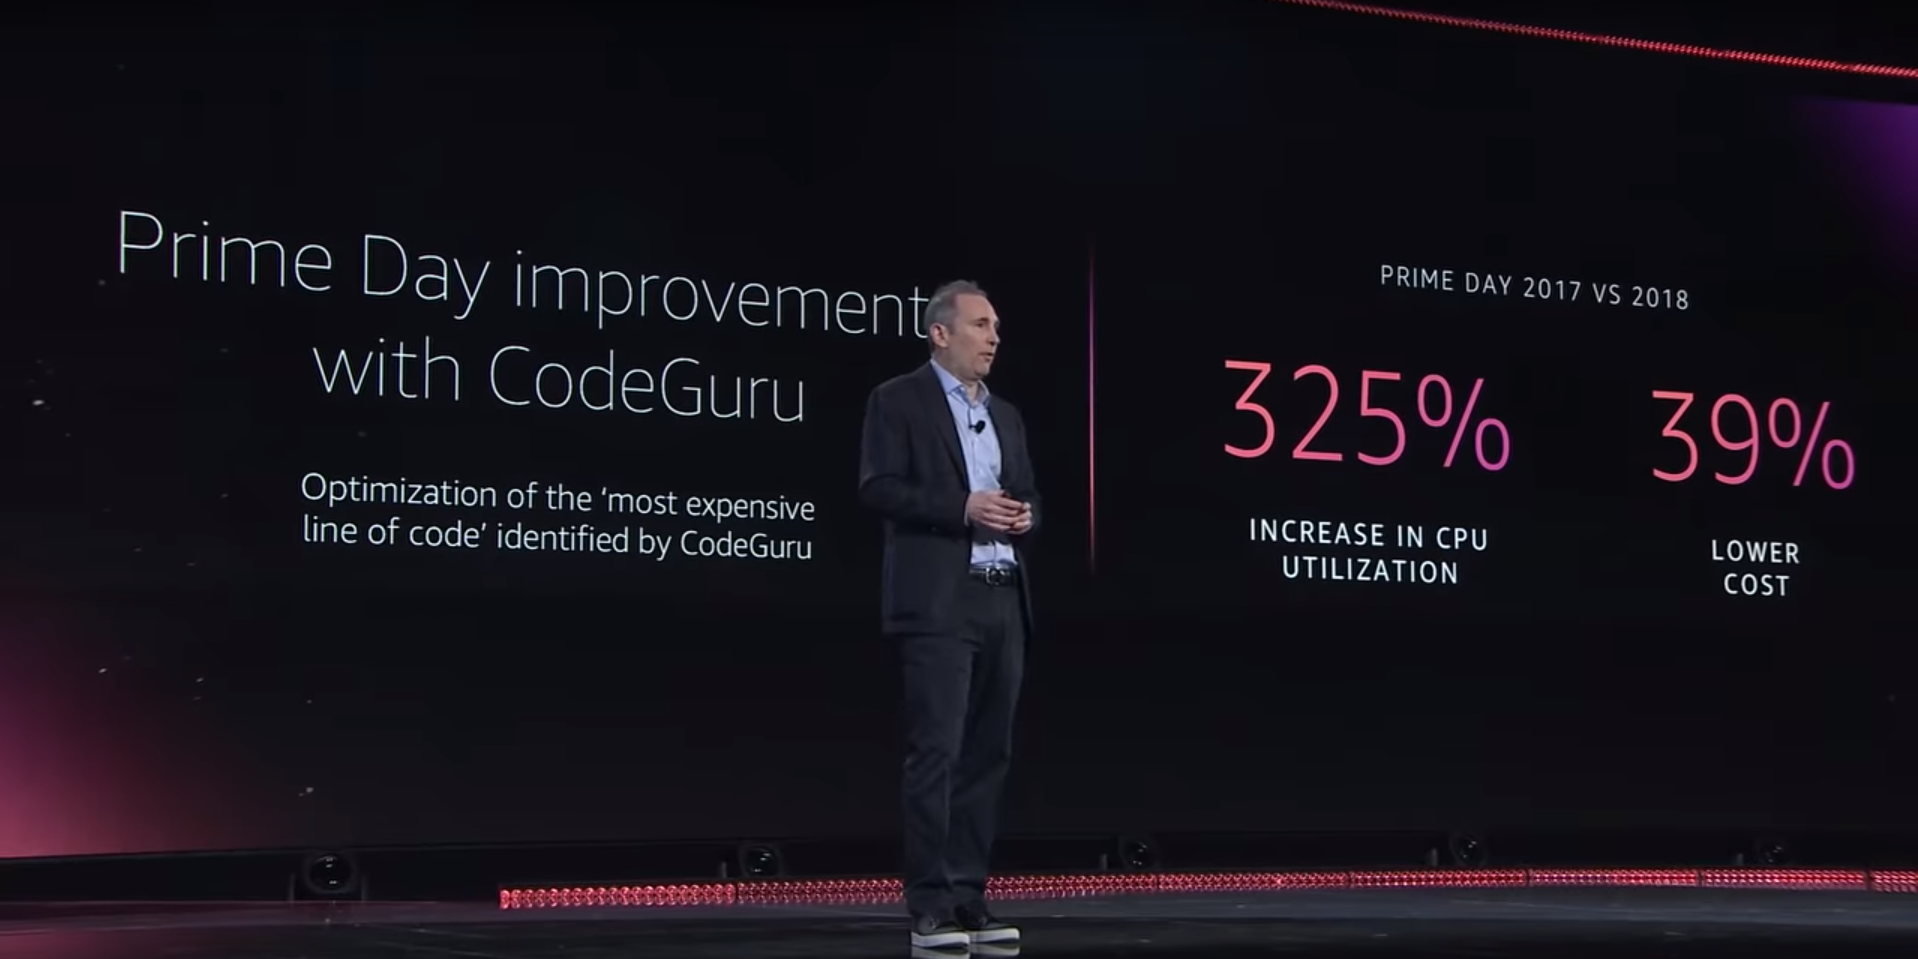 Jassy's re:Invent 2019 slide: Code guru causes a 39% cost decrease and 325% cpu utilization increase